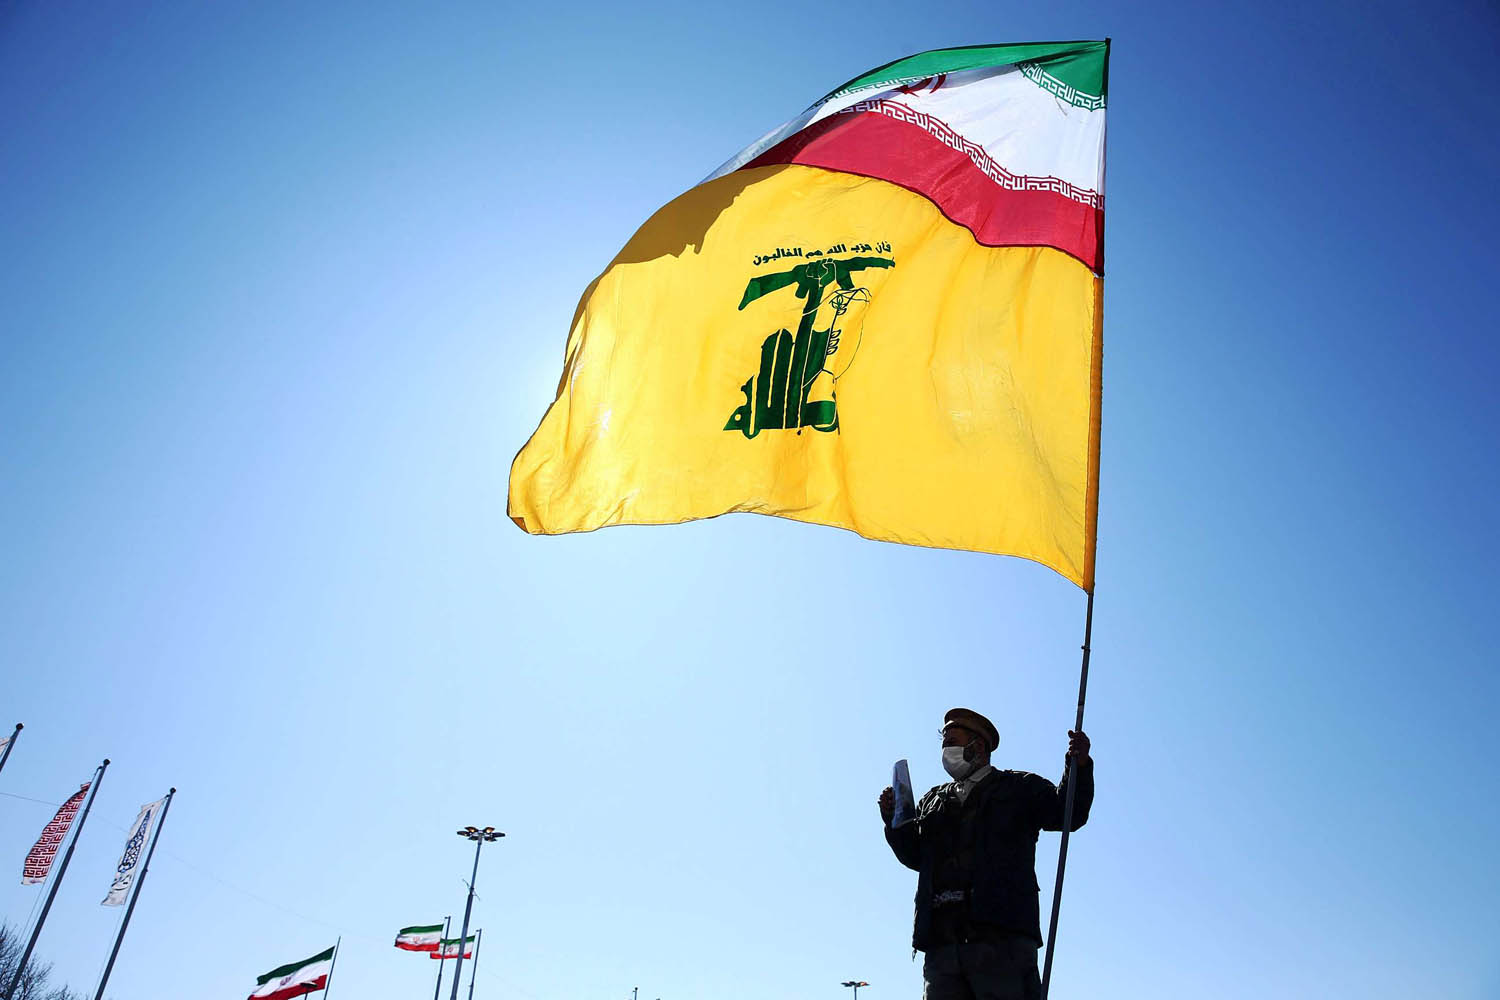 إيراني يرفع علما مشتركا لإيران وحزب الله